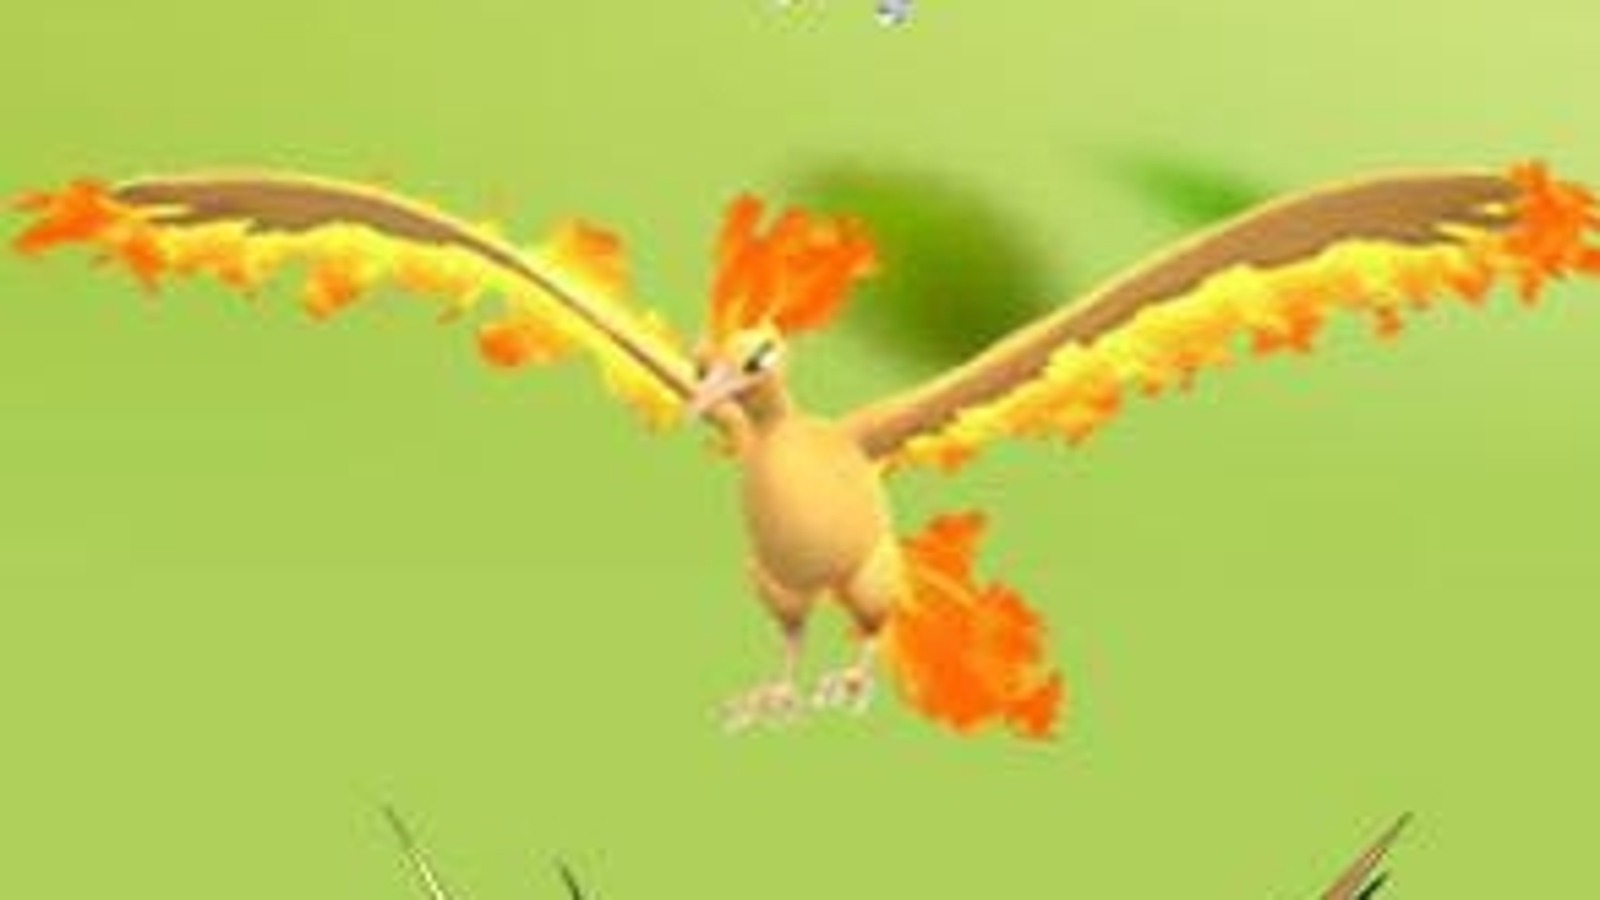 Zapdos e Moltres ganham data para estrear em Pokémon GO - TecMundo